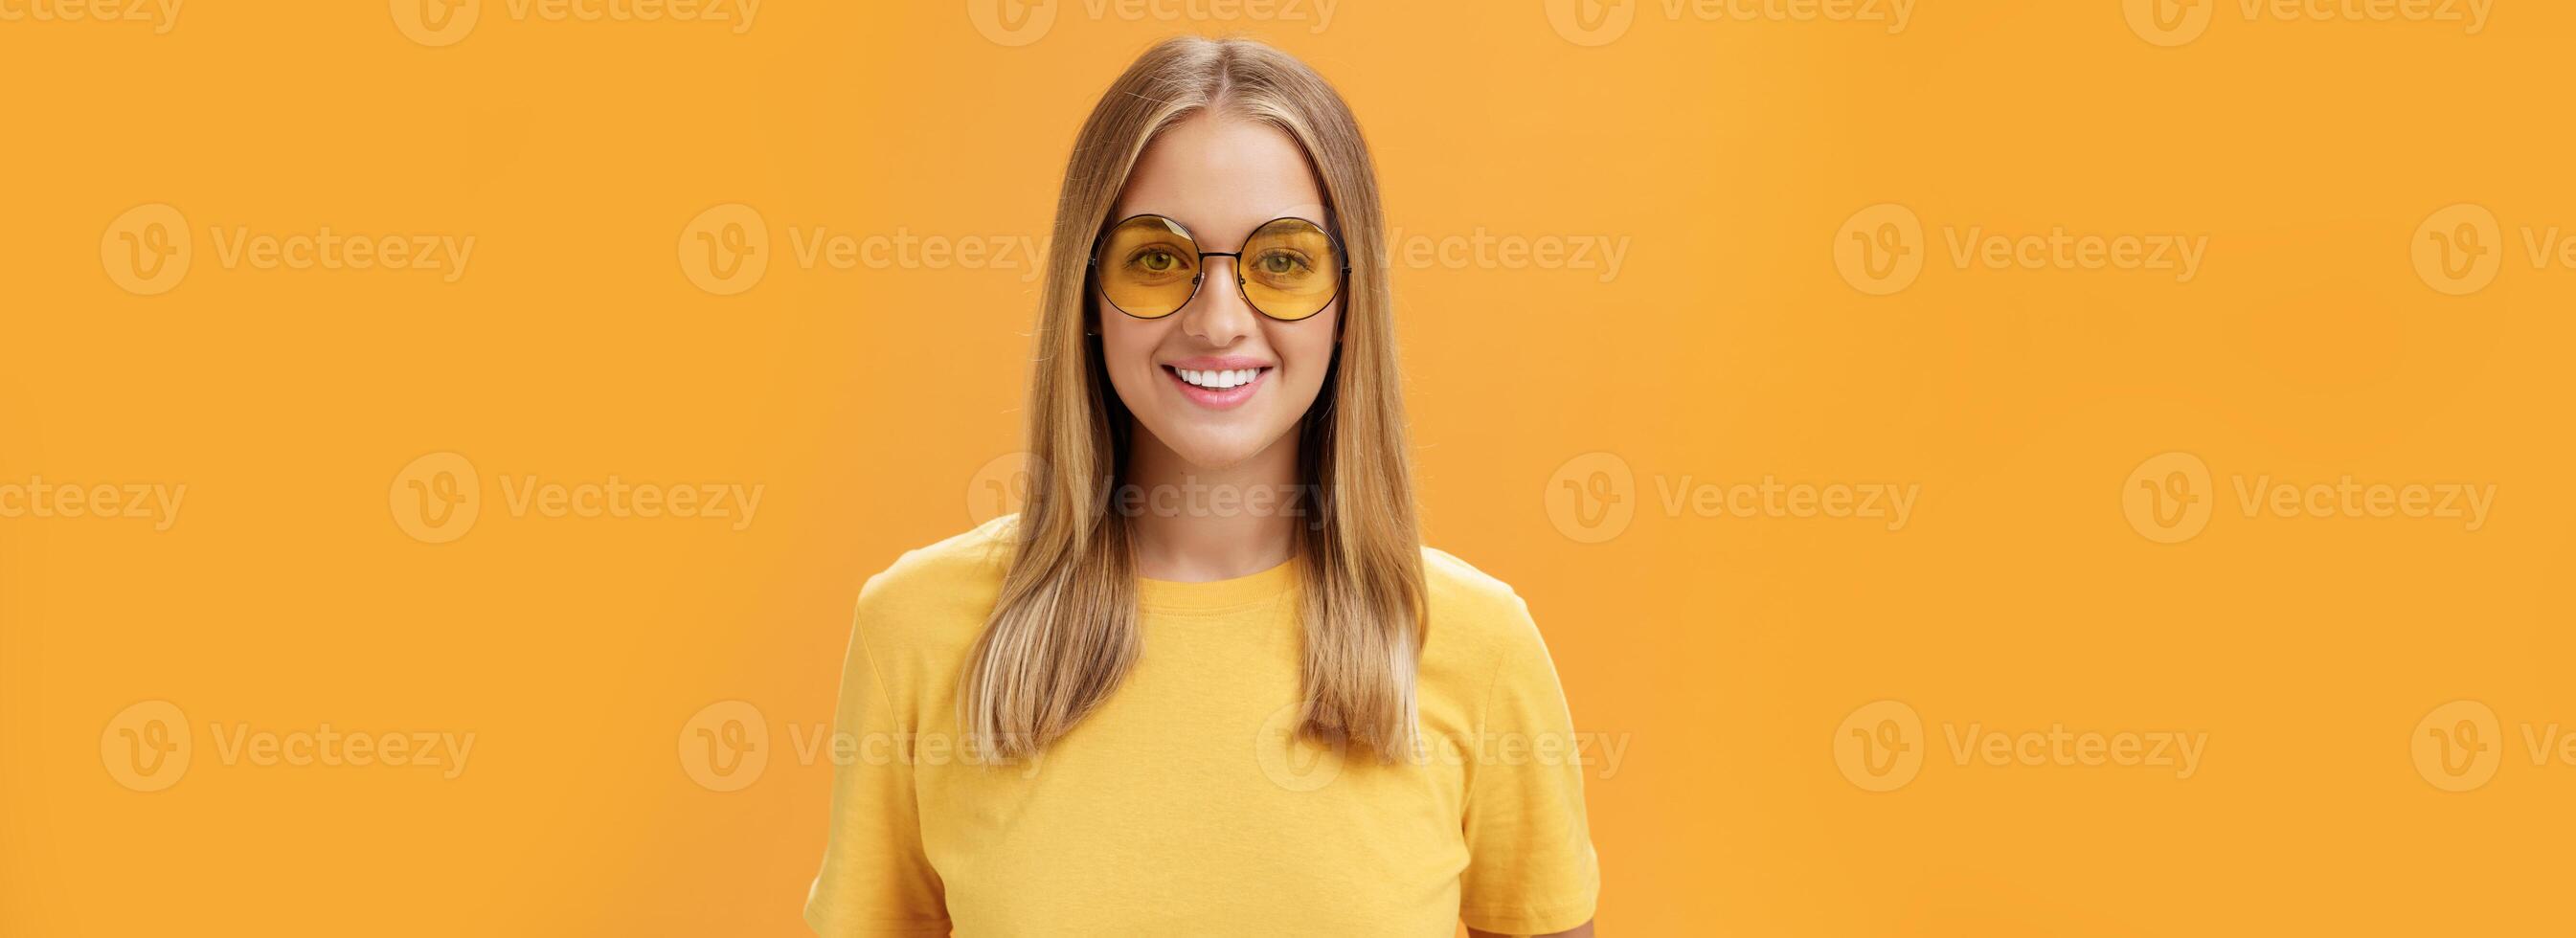 elegant zelfverzekerd charmant Europese vrouw met eerlijk haar- en gebruind huid in geel t-shirt en zonnebril glimlachen breed geamuseerd en vrolijk staren Bij camera poseren tegen oranje achtergrond foto